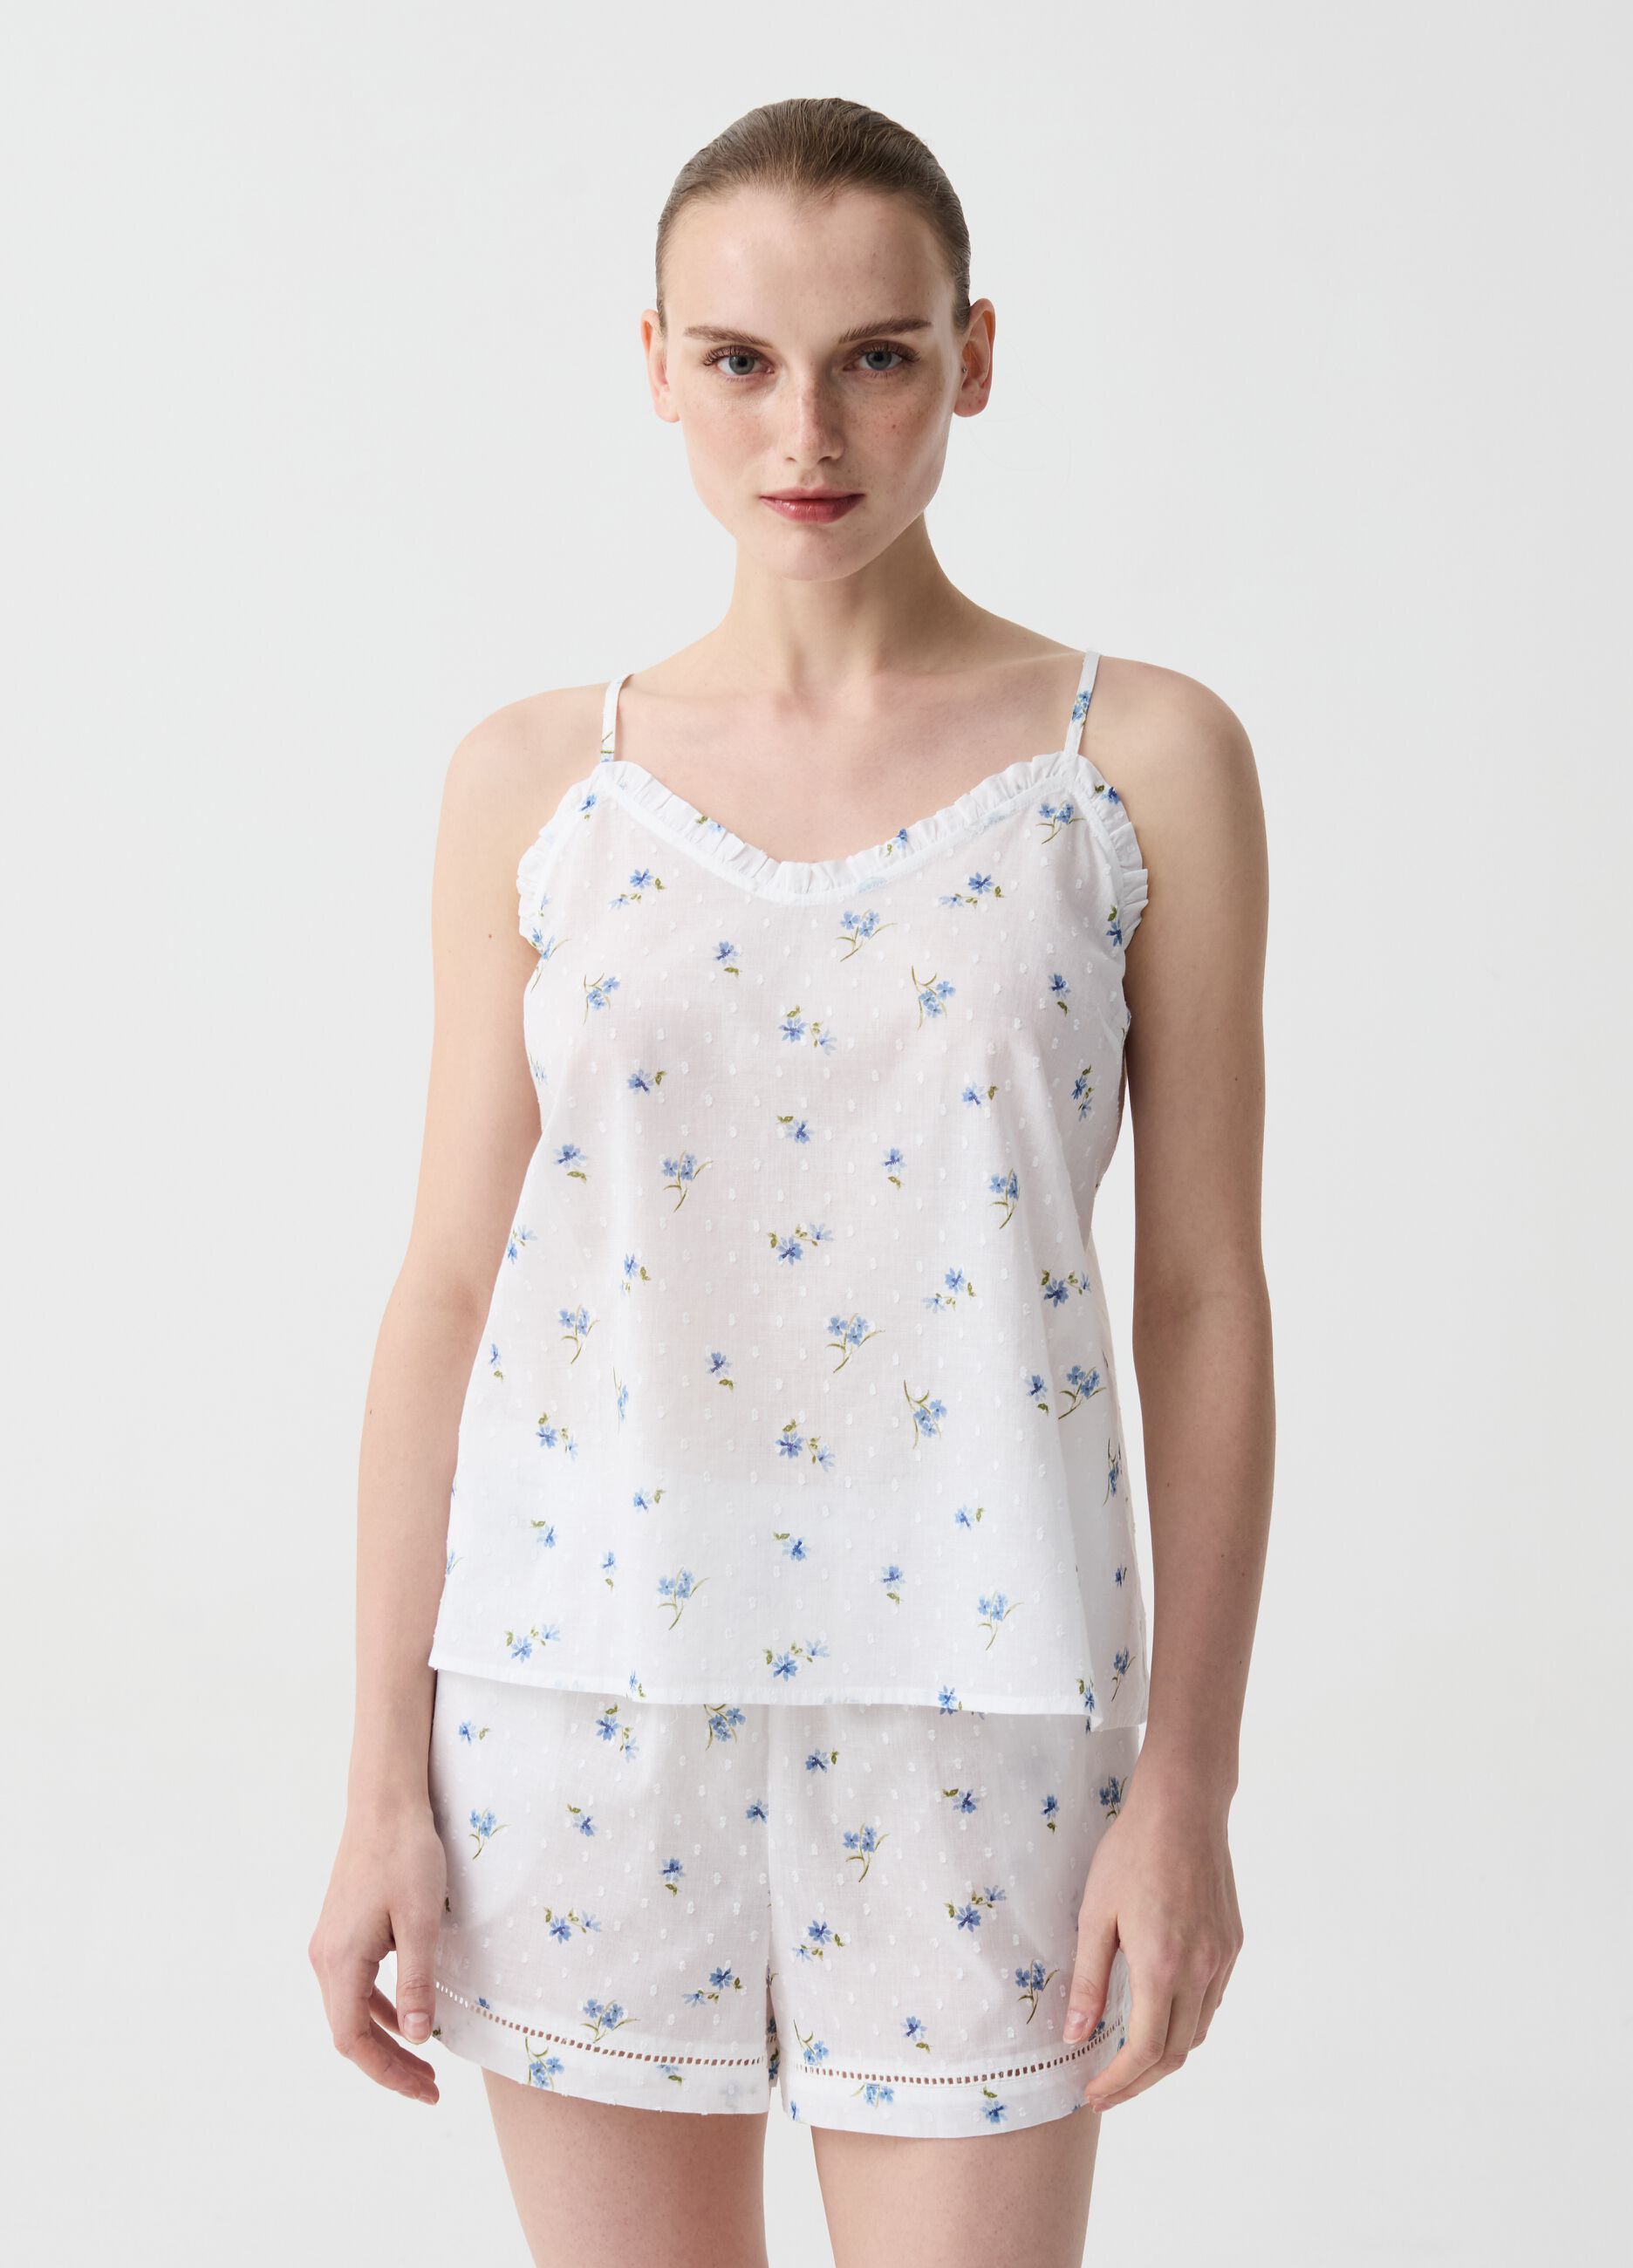 Pijama corto de algodón dobby de florecitas